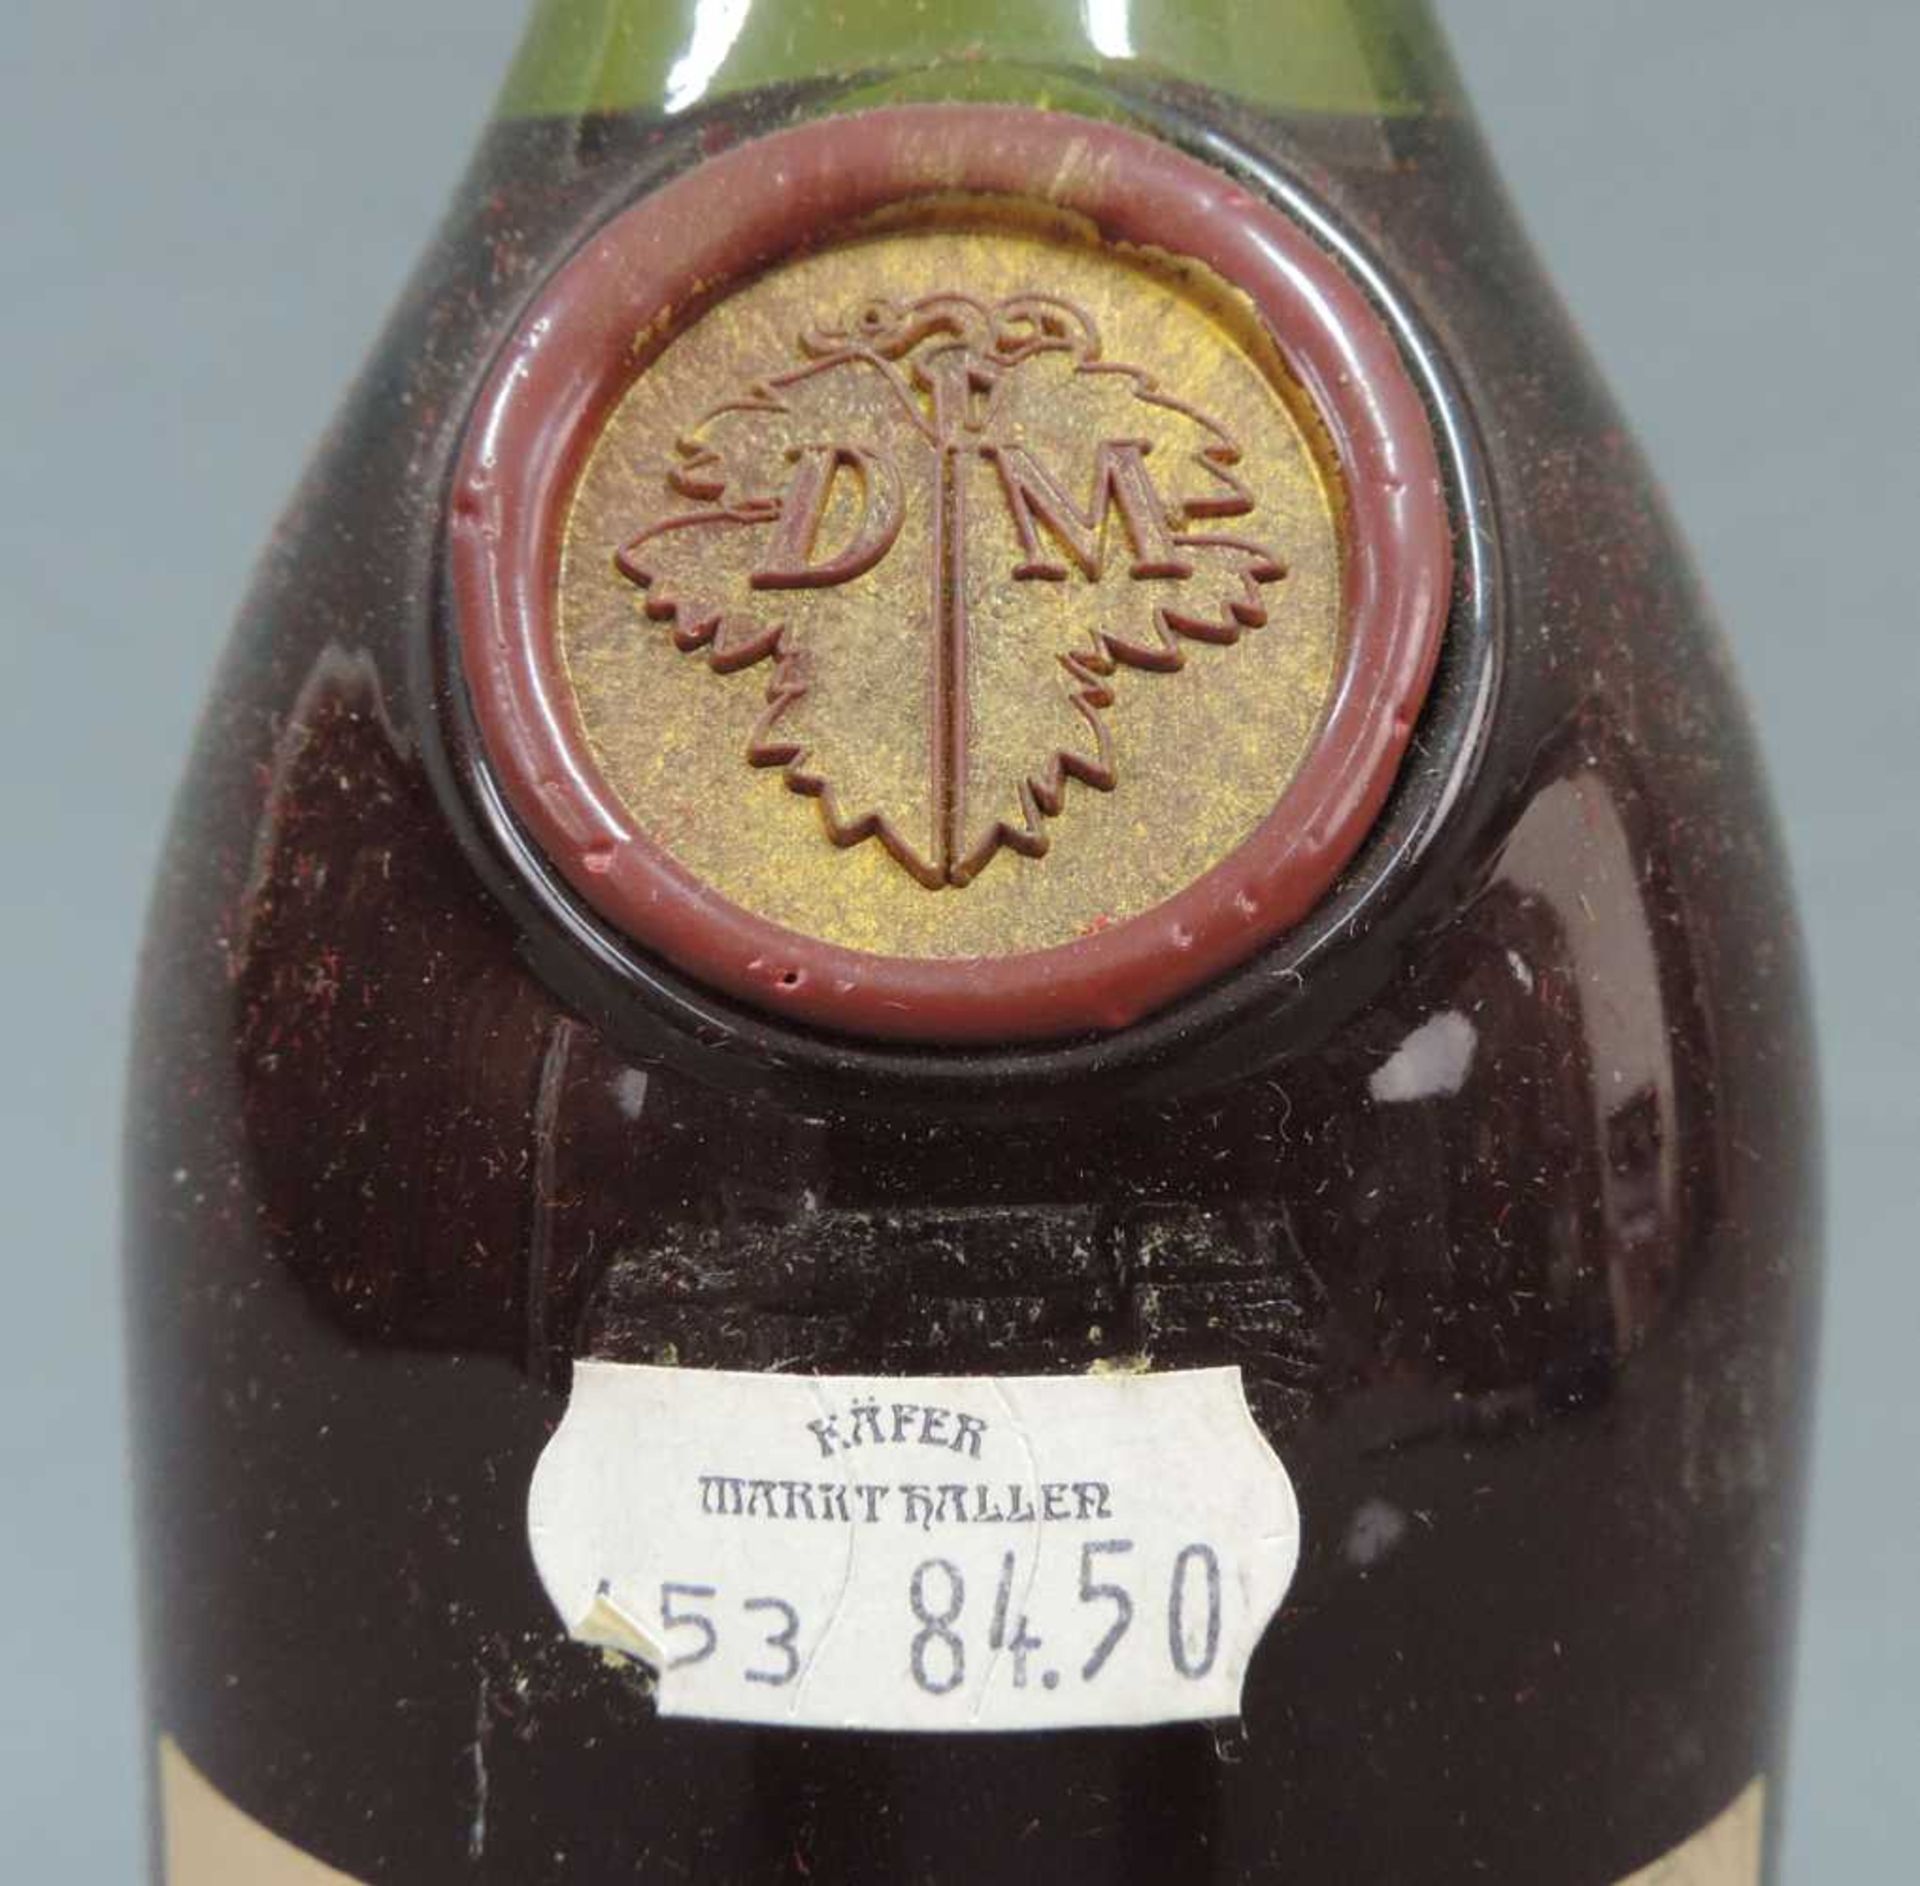 Denis Mounié Grande Champagne Extra Cognac. Maison Fondée en 1838. 70cl. 40%. Denis Mounié Grande - Image 3 of 5